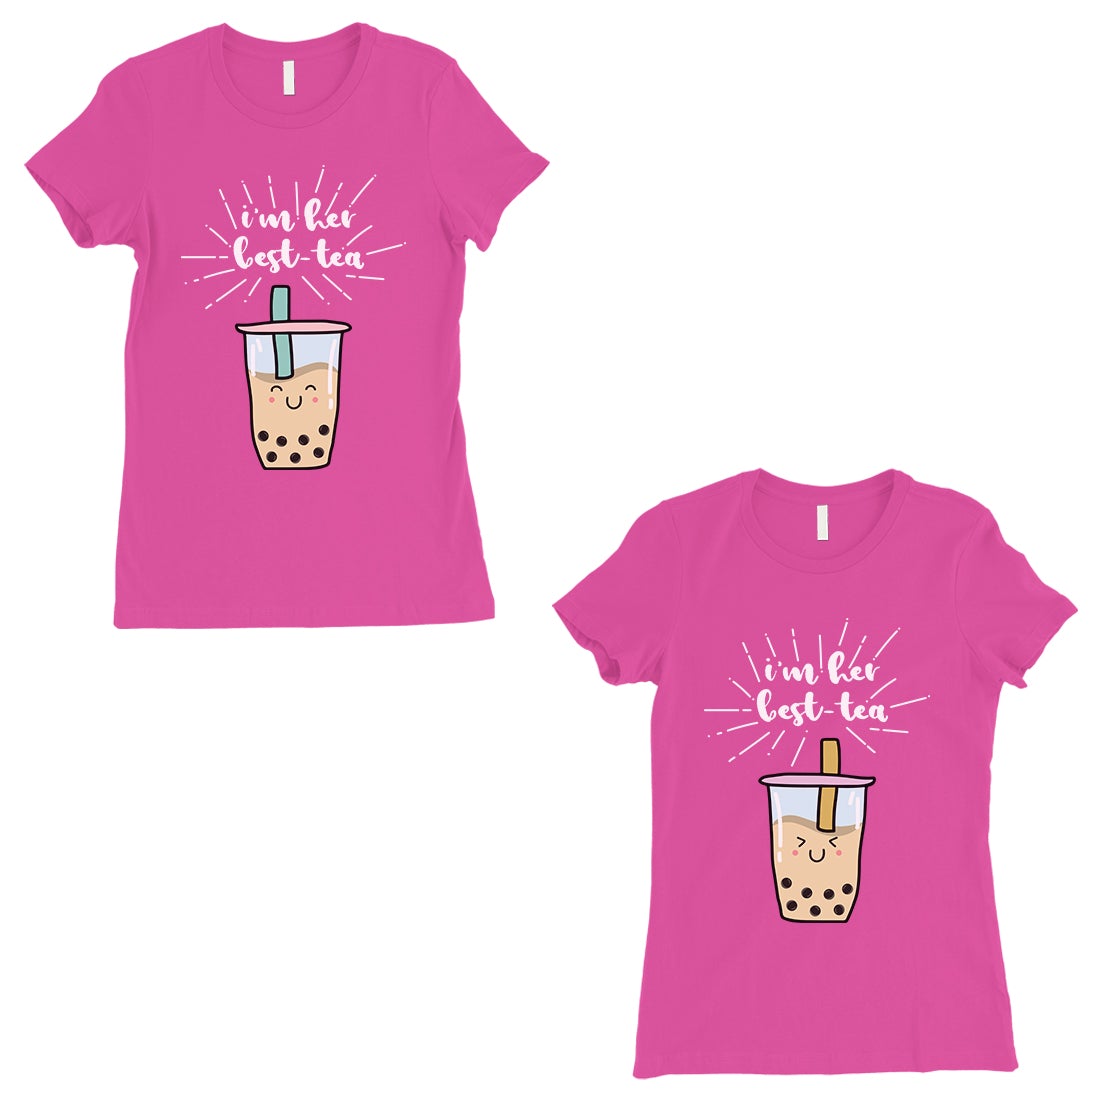 Boba Milk Best-Tea BFF Matching Shirts Womens Hot Pink T-Shirt